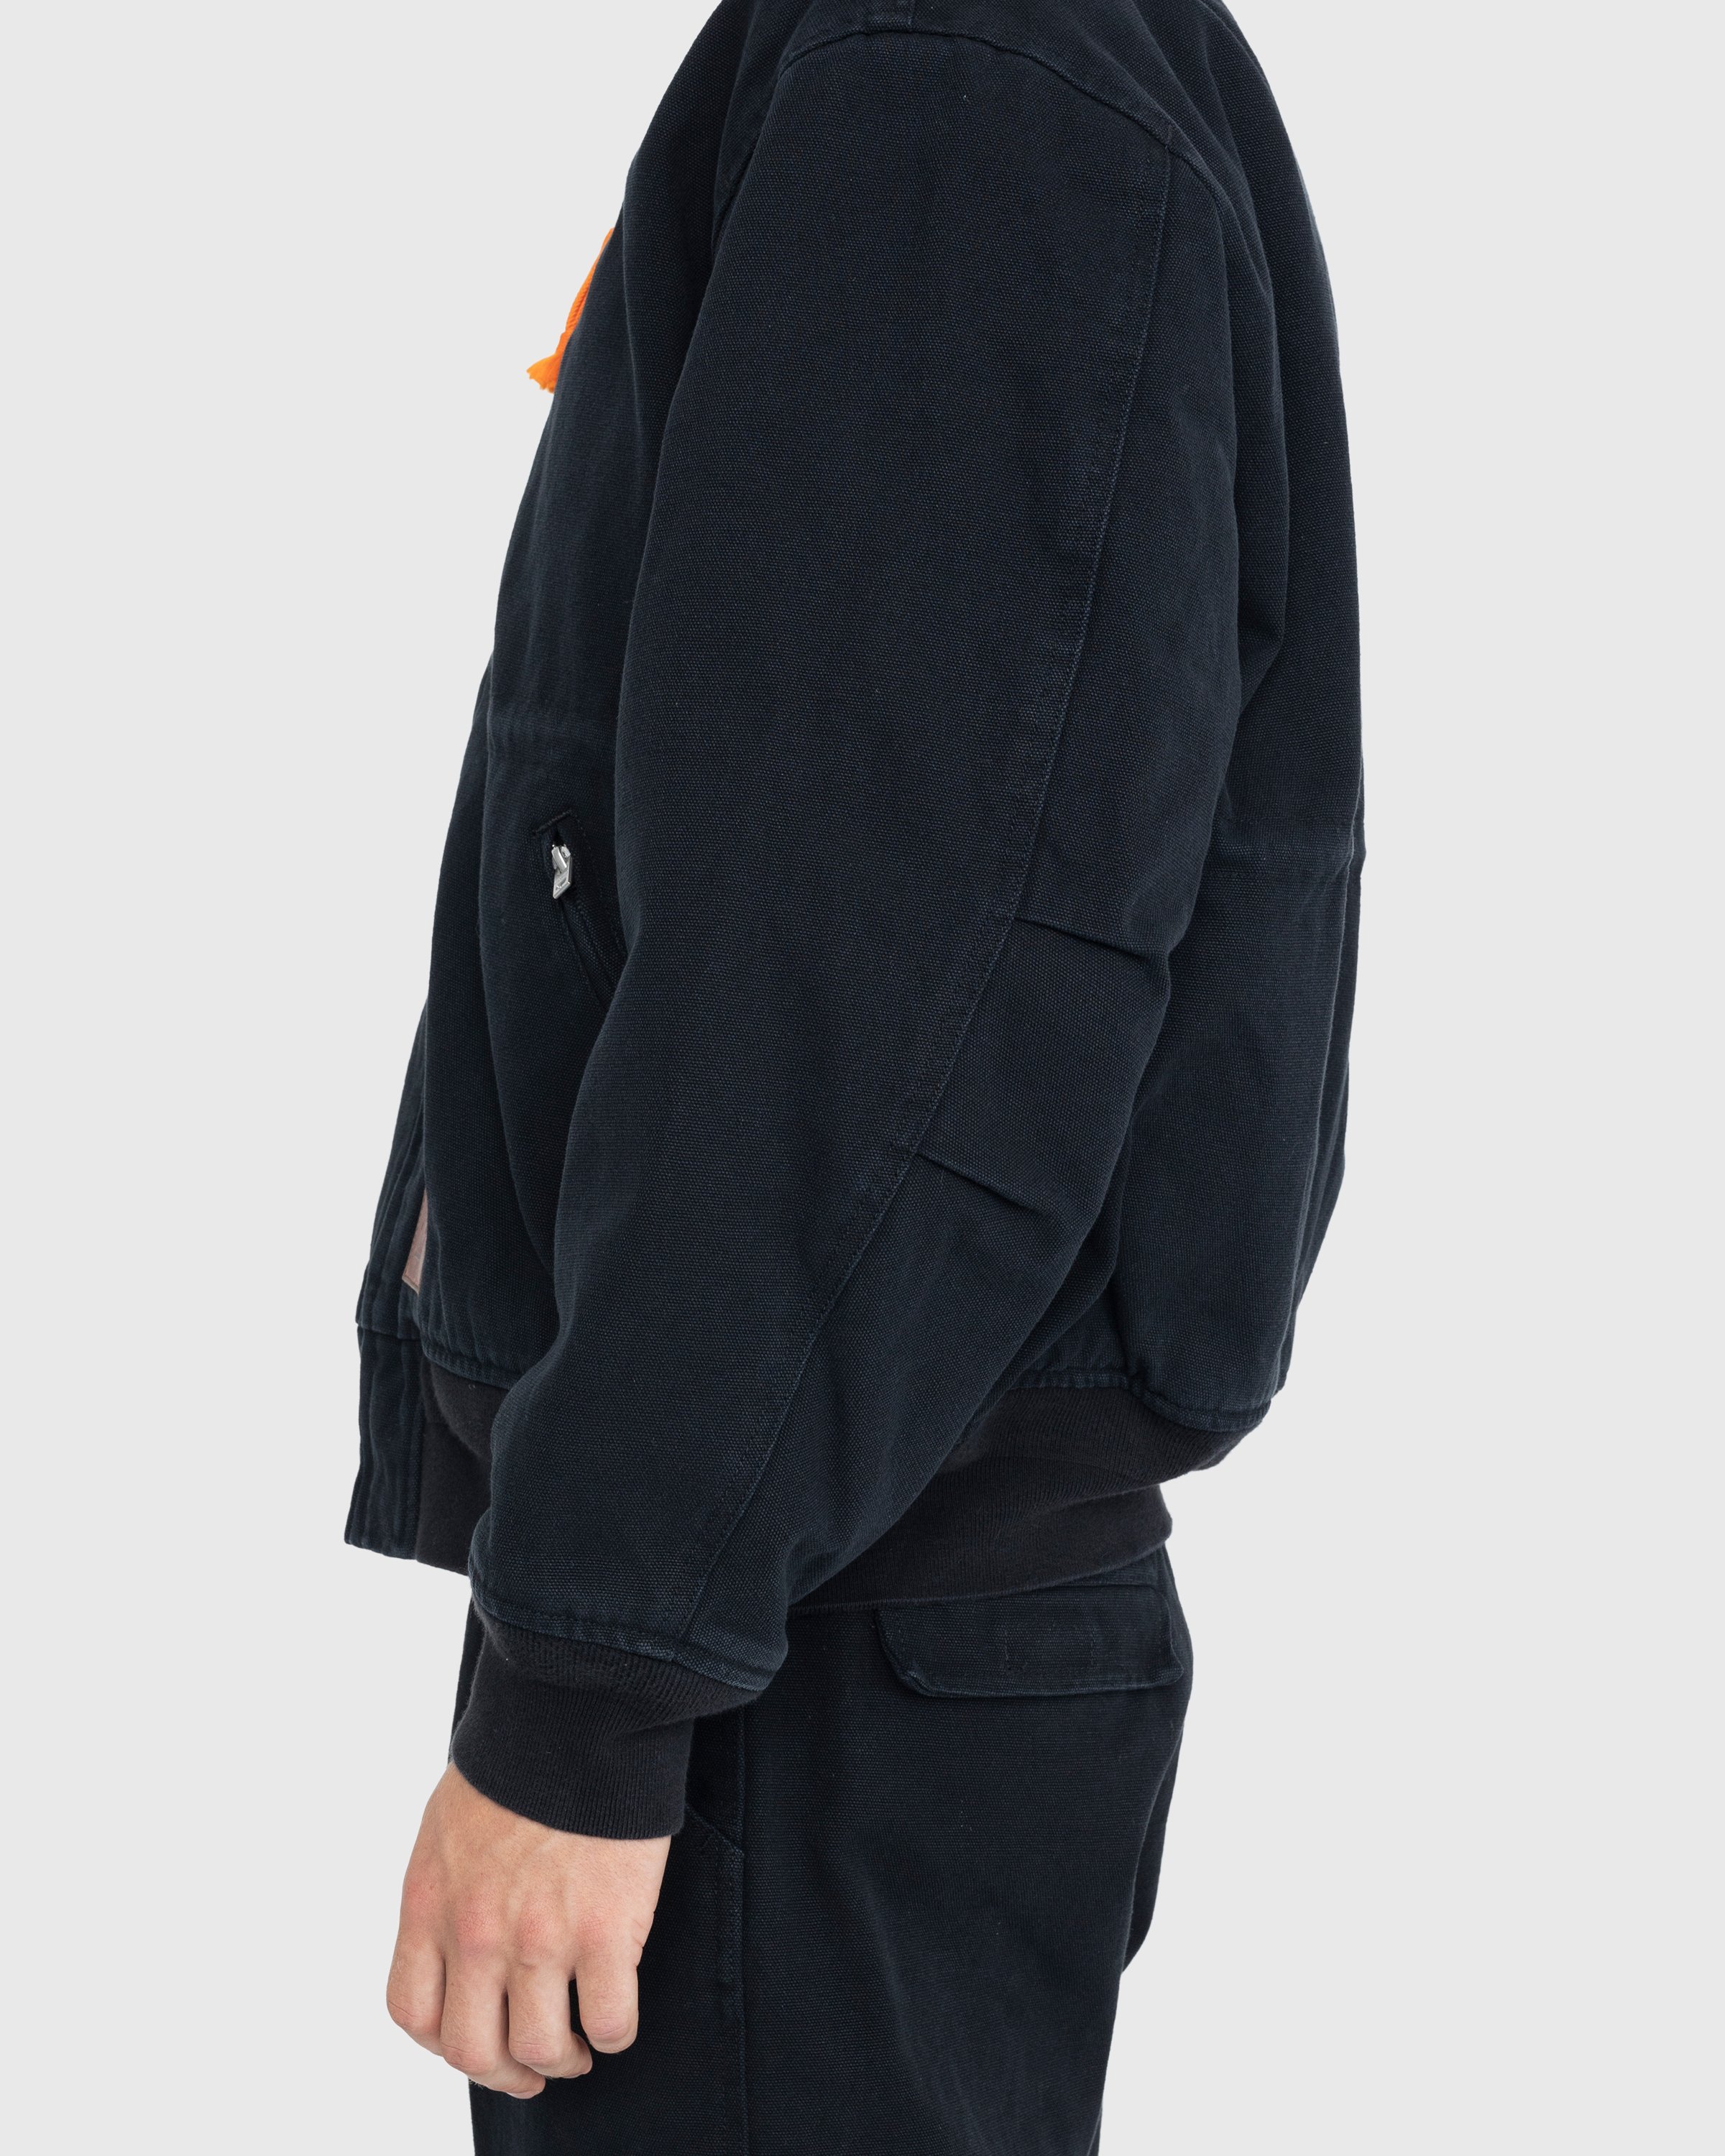 Acne Studios - Organic Cotton Bomber Jacket Black - Clothing - Black - Image 4